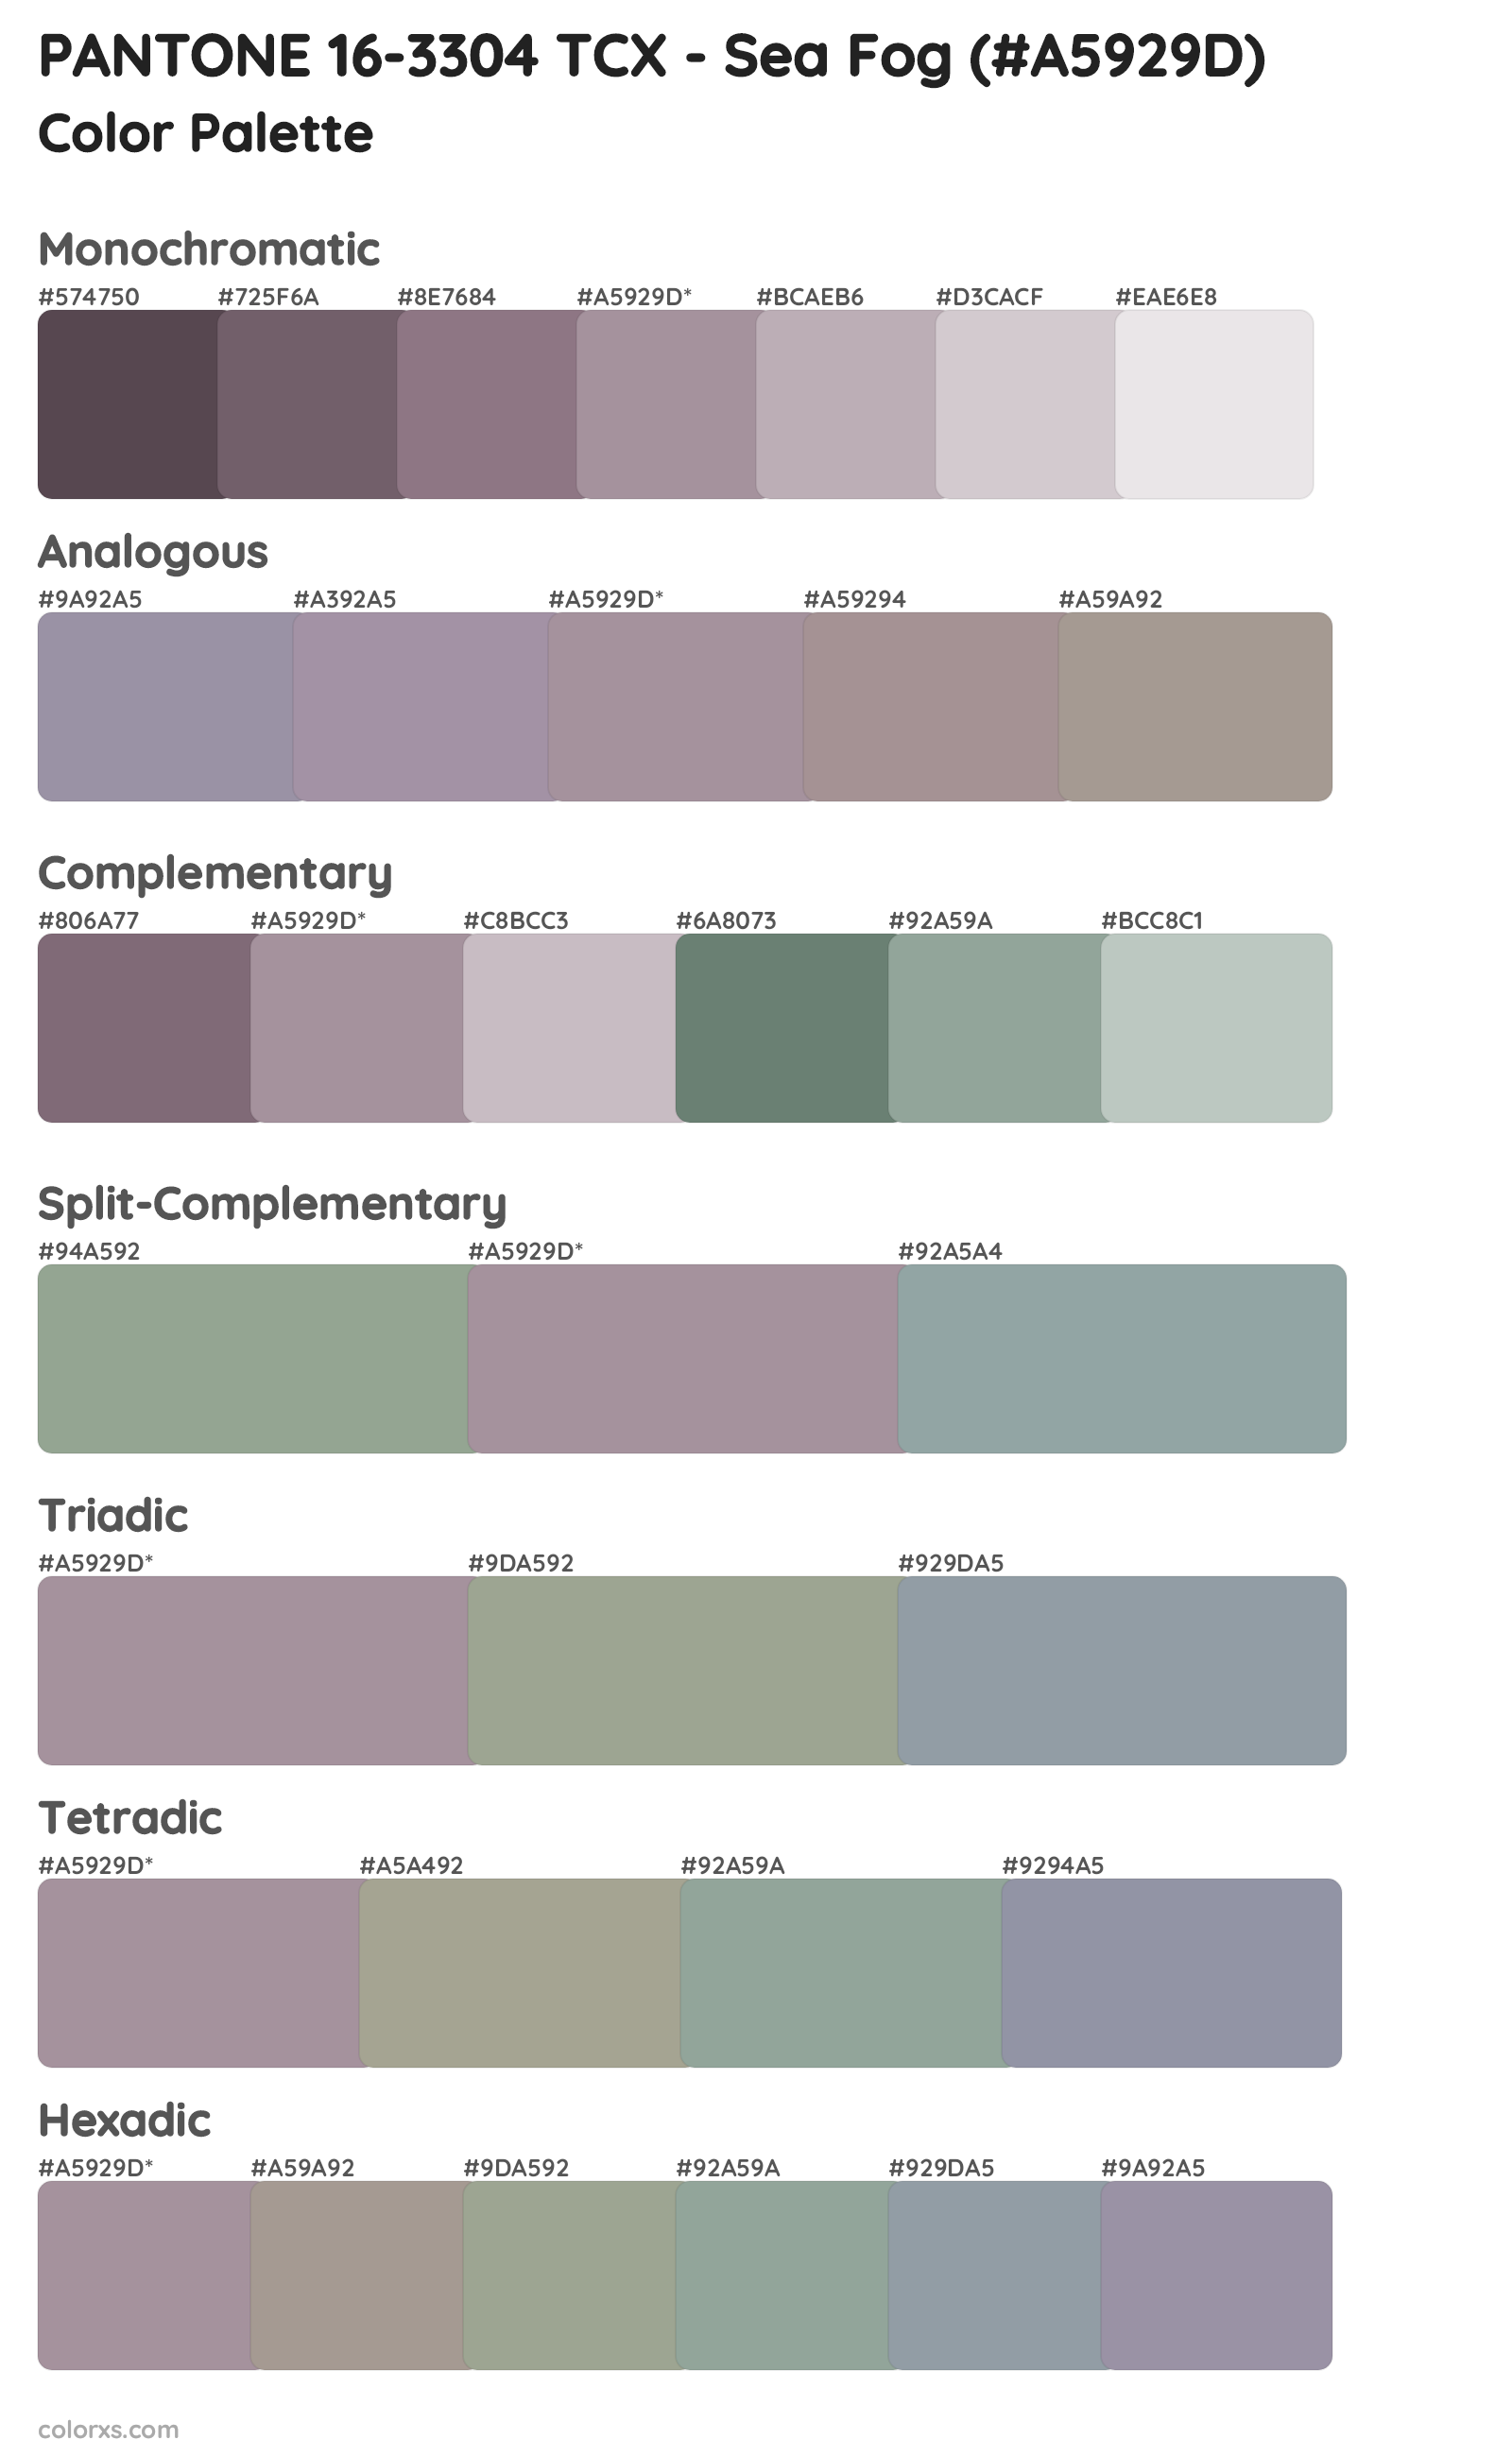 PANTONE 16-3304 TCX - Sea Fog Color Scheme Palettes